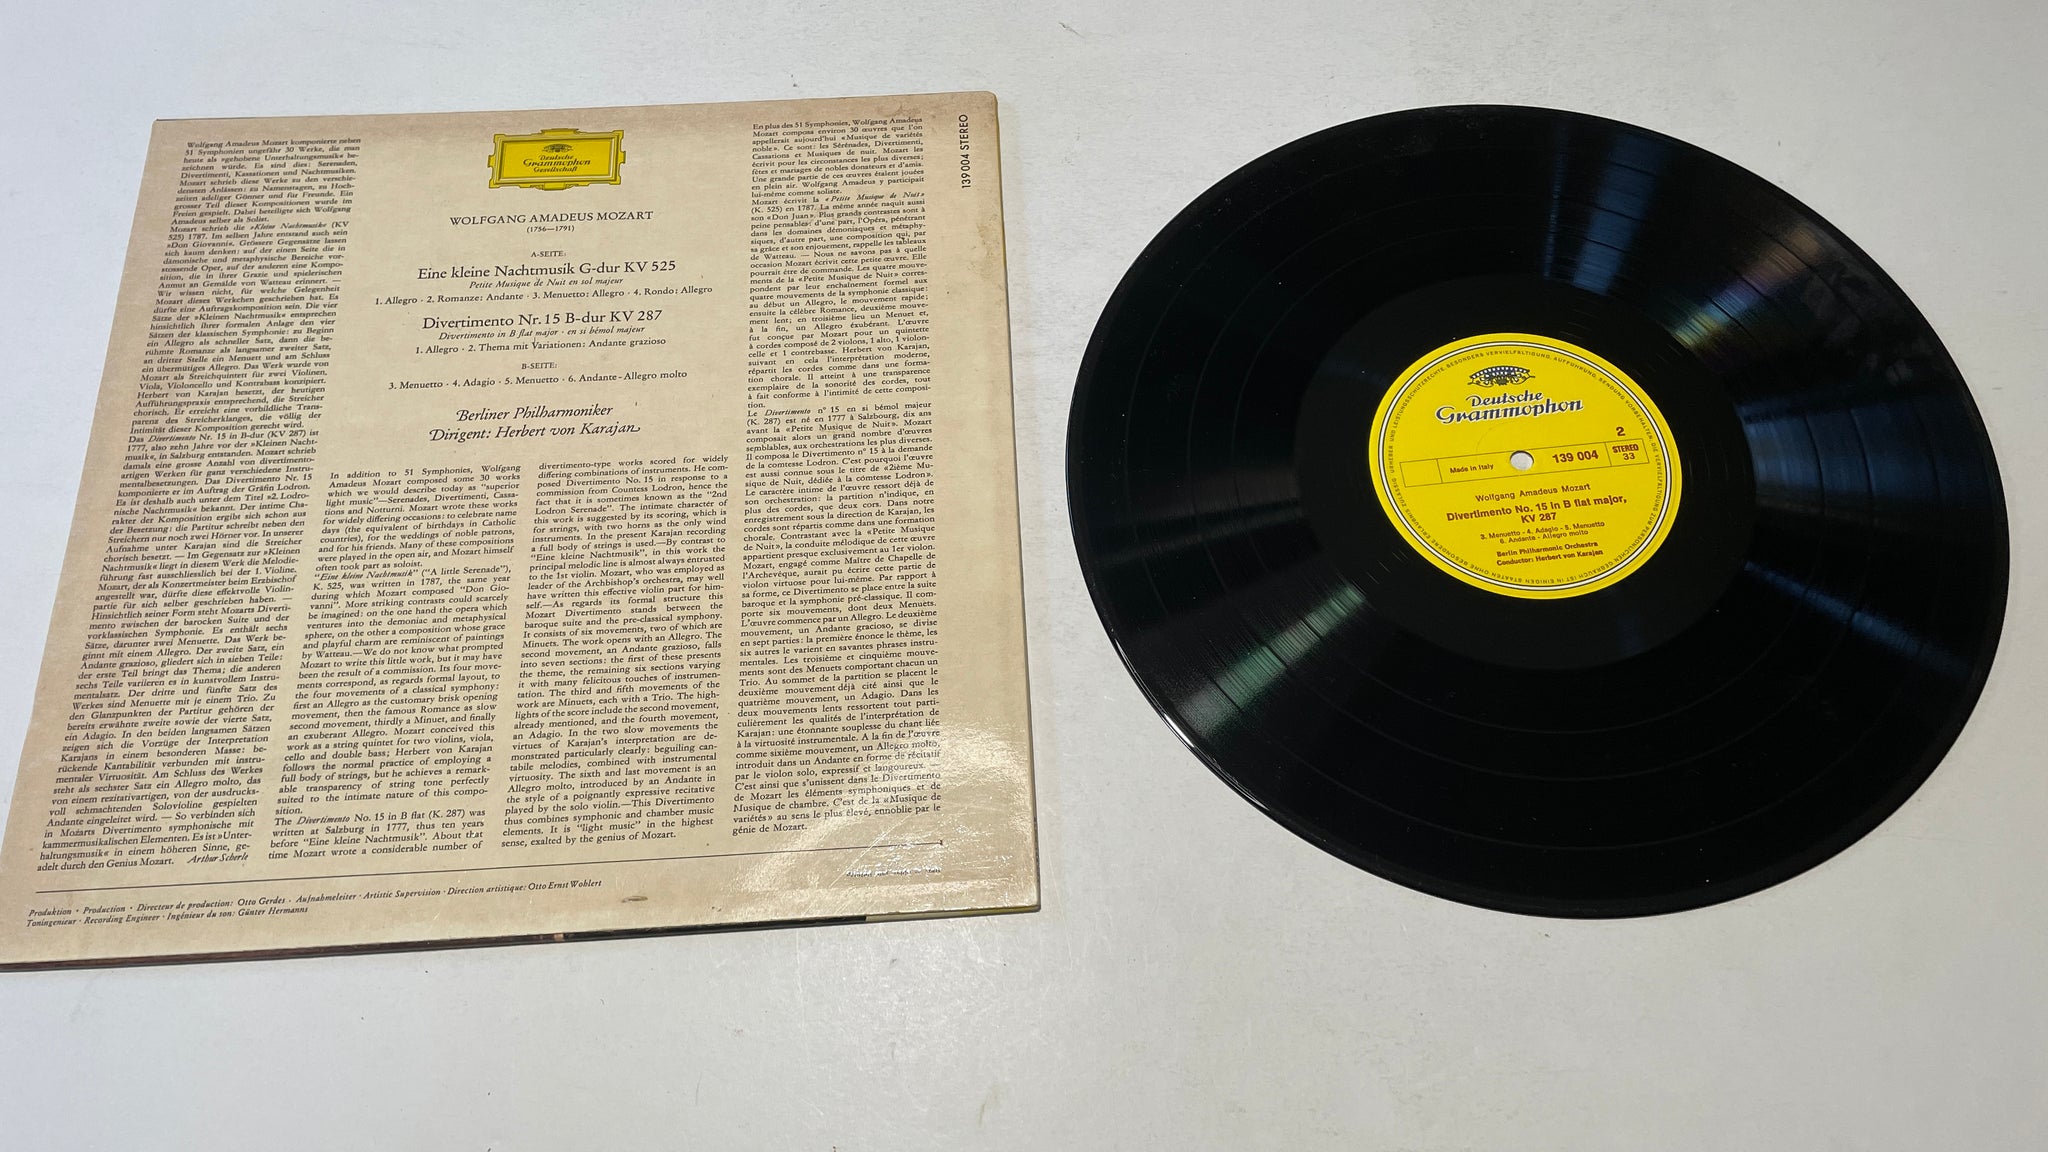 von Karajan – Eine Nachtmusik Used Vinyl LP VG+ - Slow Turnin